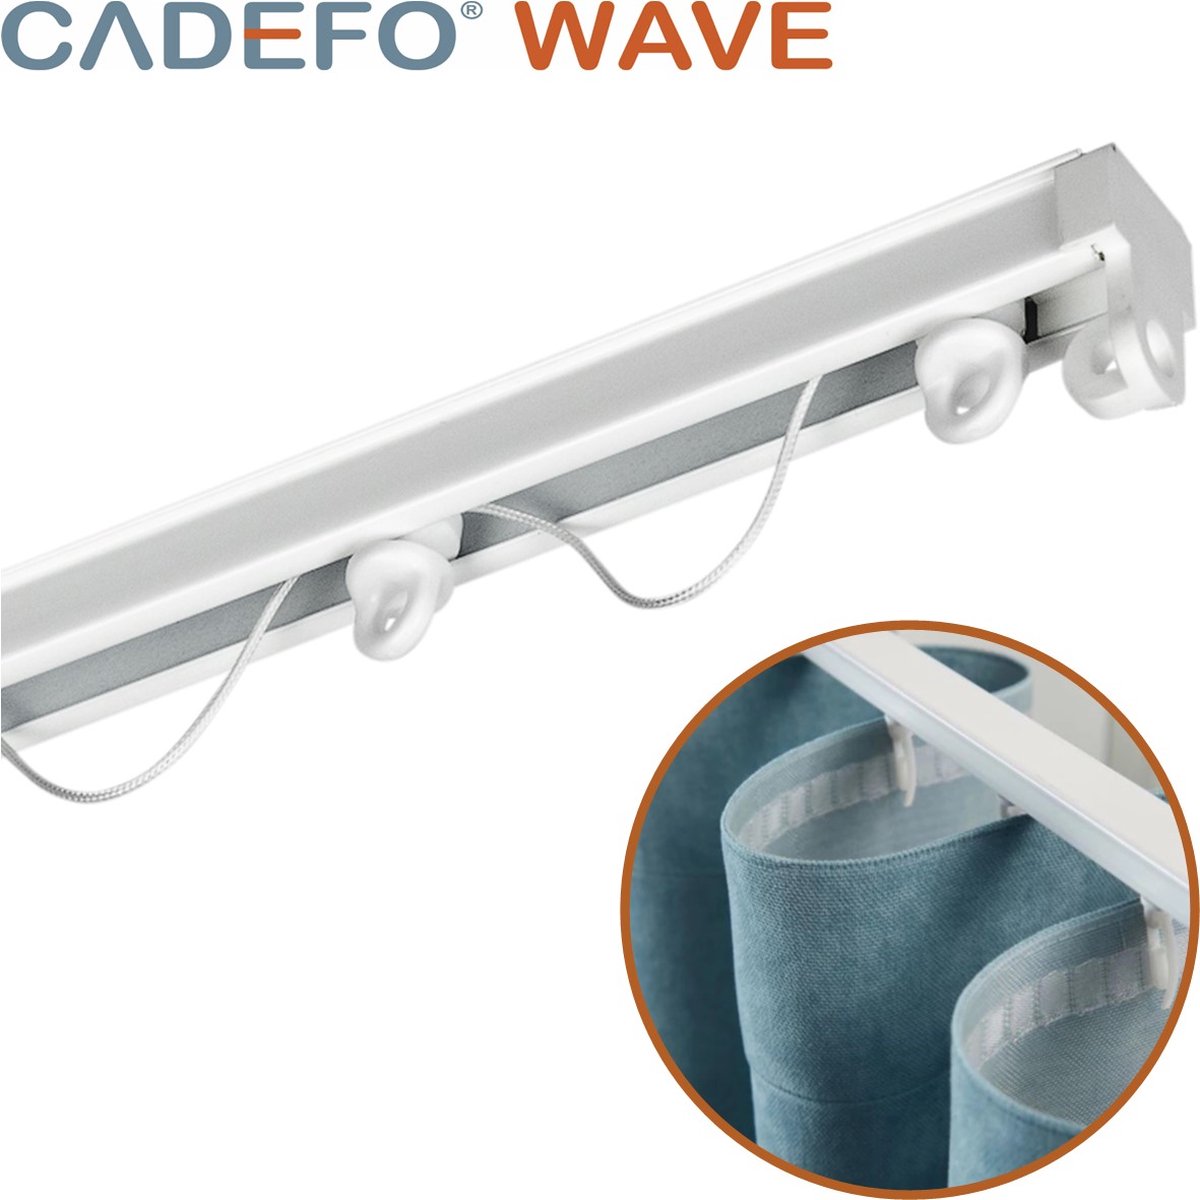 CADEFO WAVE (401 - 450 cm) Gordijnrails - Compleet op maat! - UIT 1 STUK - Leverbaar tot 6 meter - Plafondbevestiging - Lengte 404 cm